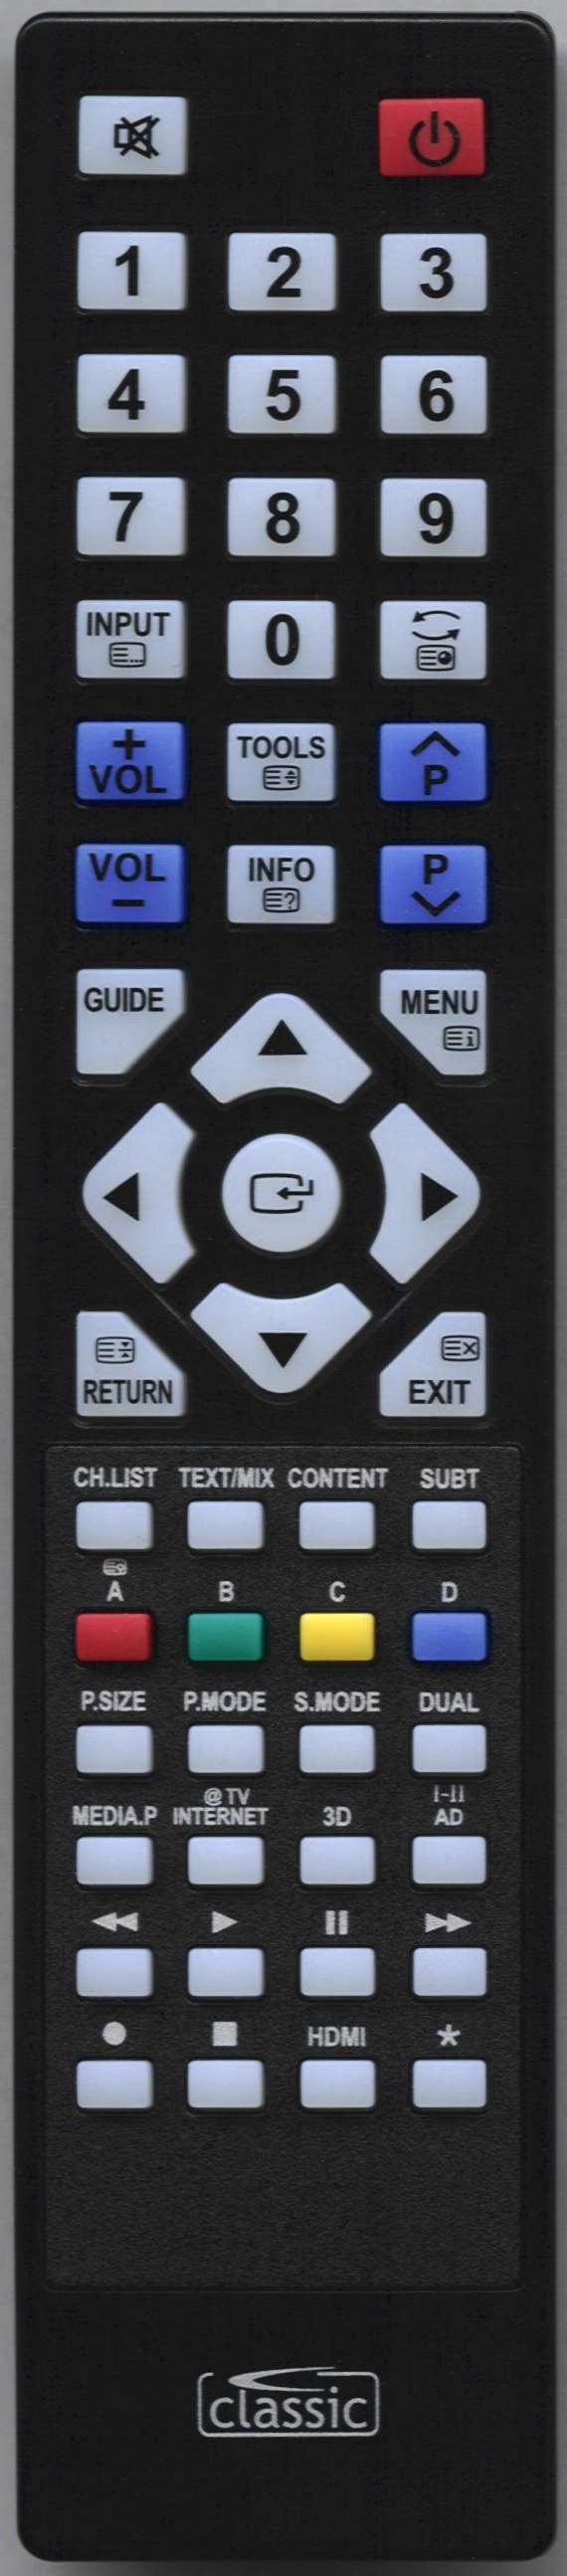 SAMSUNG UE46C6820USXXN Remote Control